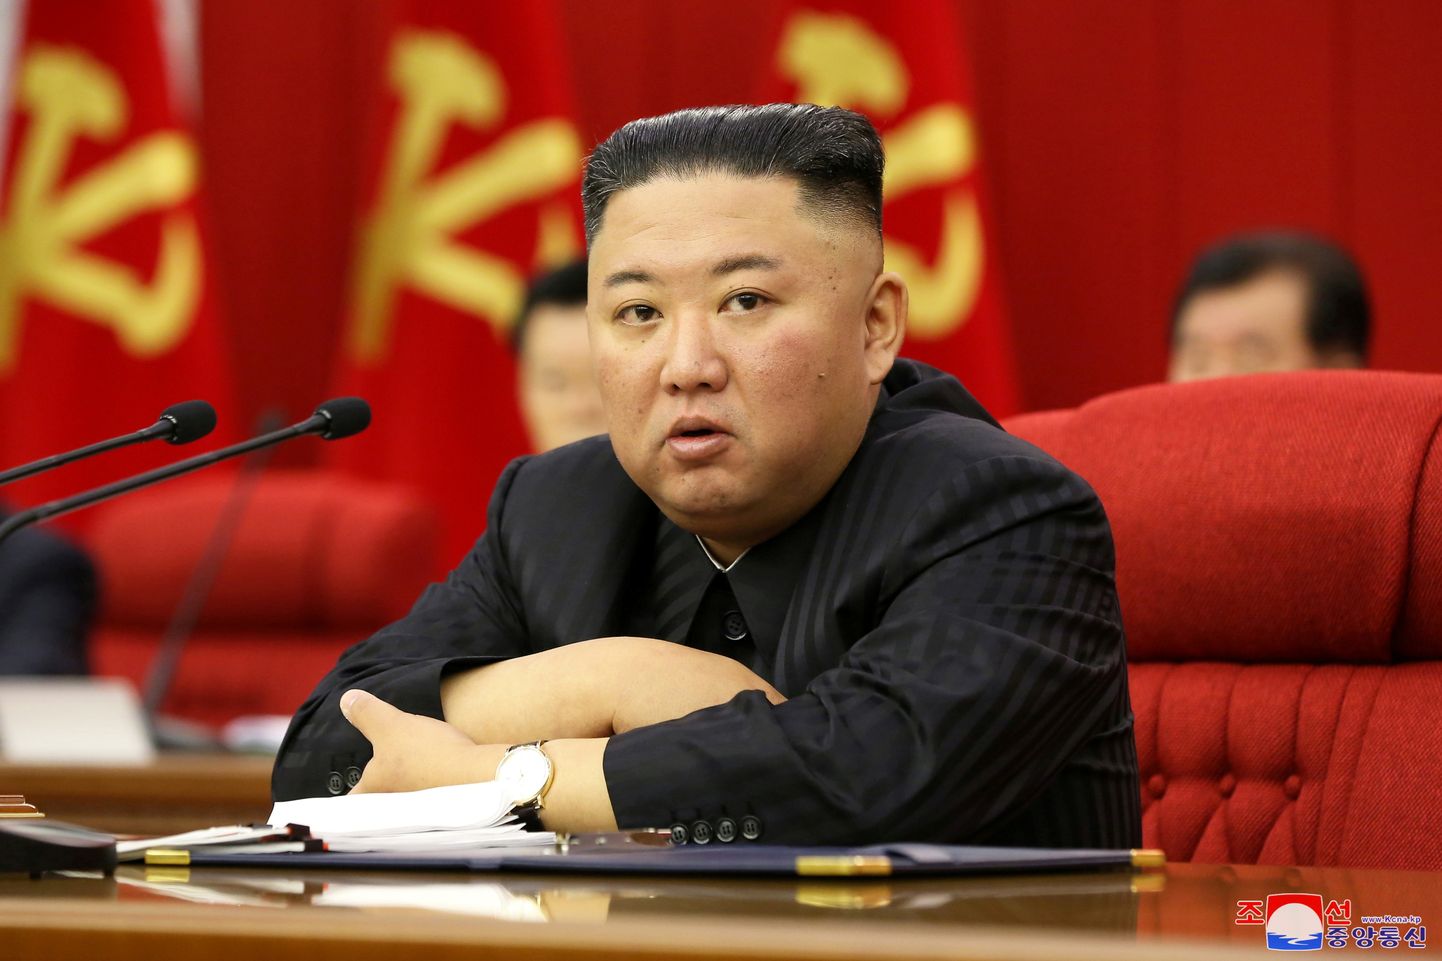 Ziemeļkorejas vadonis Kims Čenuns